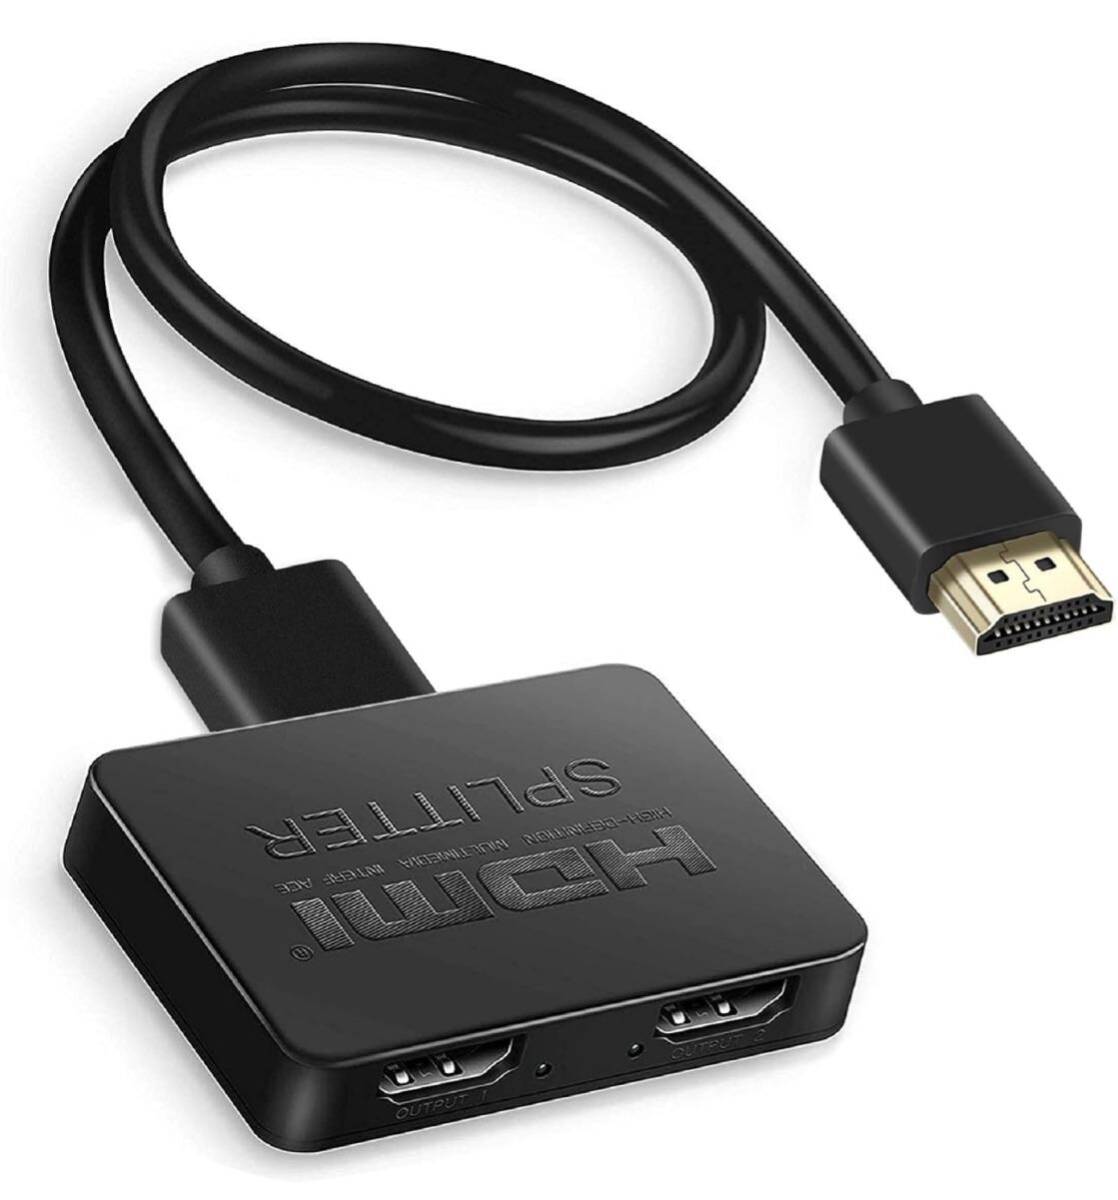 HDMI分配器 HDMIスプリッター 1入力2出力 3D、フルHD、お好みの2台のディスプレイに同時出力可USB電源ケーブル&HDMIケーブル付属